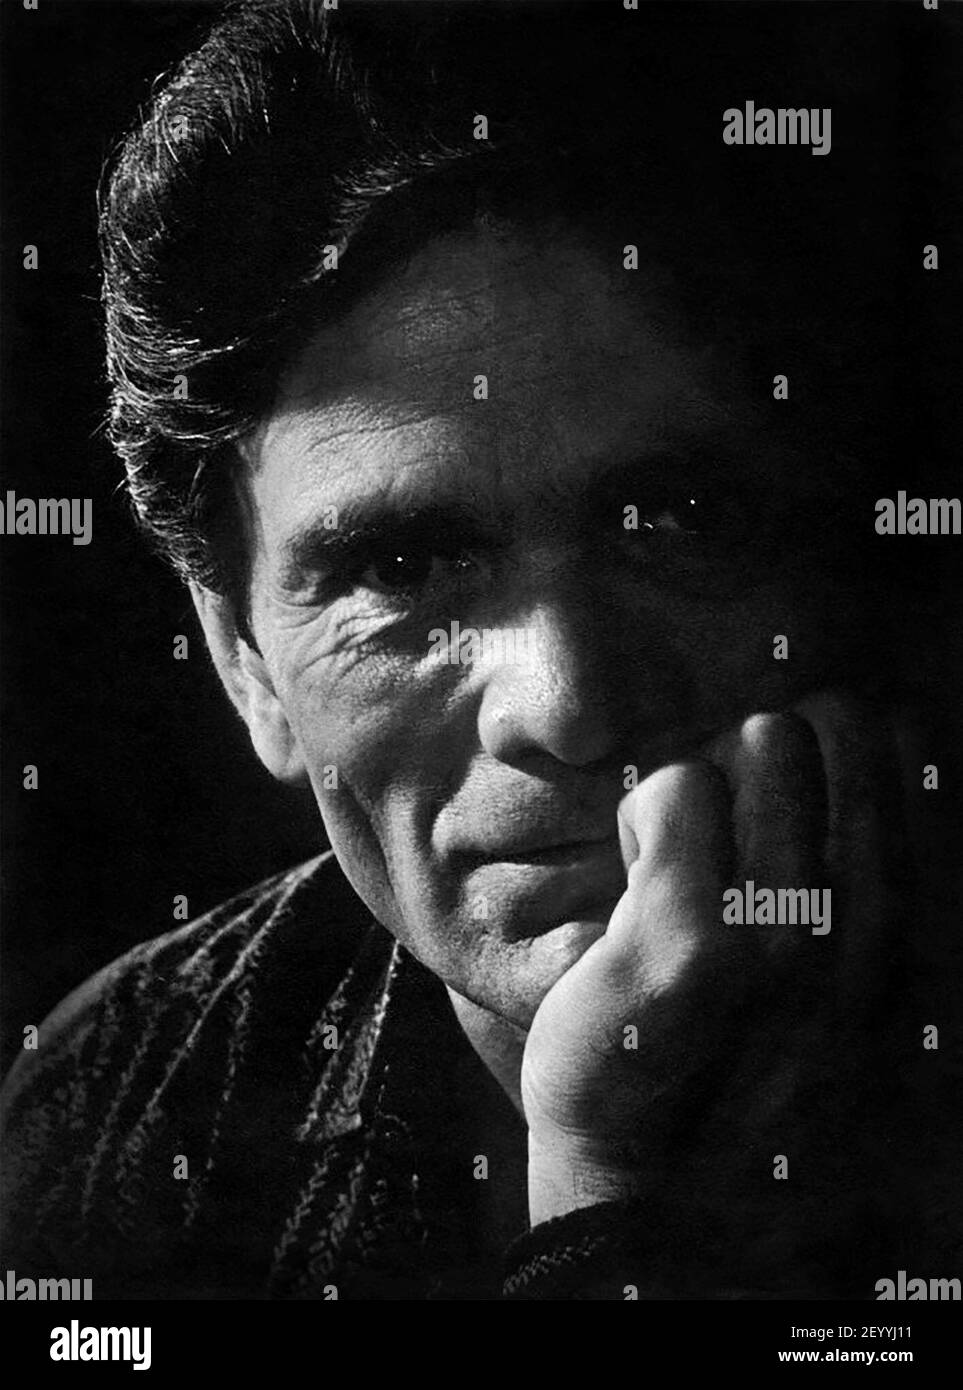 Pasolini. Ritratto del regista e scrittore italiano Pier Paolo Pasolini (1922-1975), 1962 Foto Stock